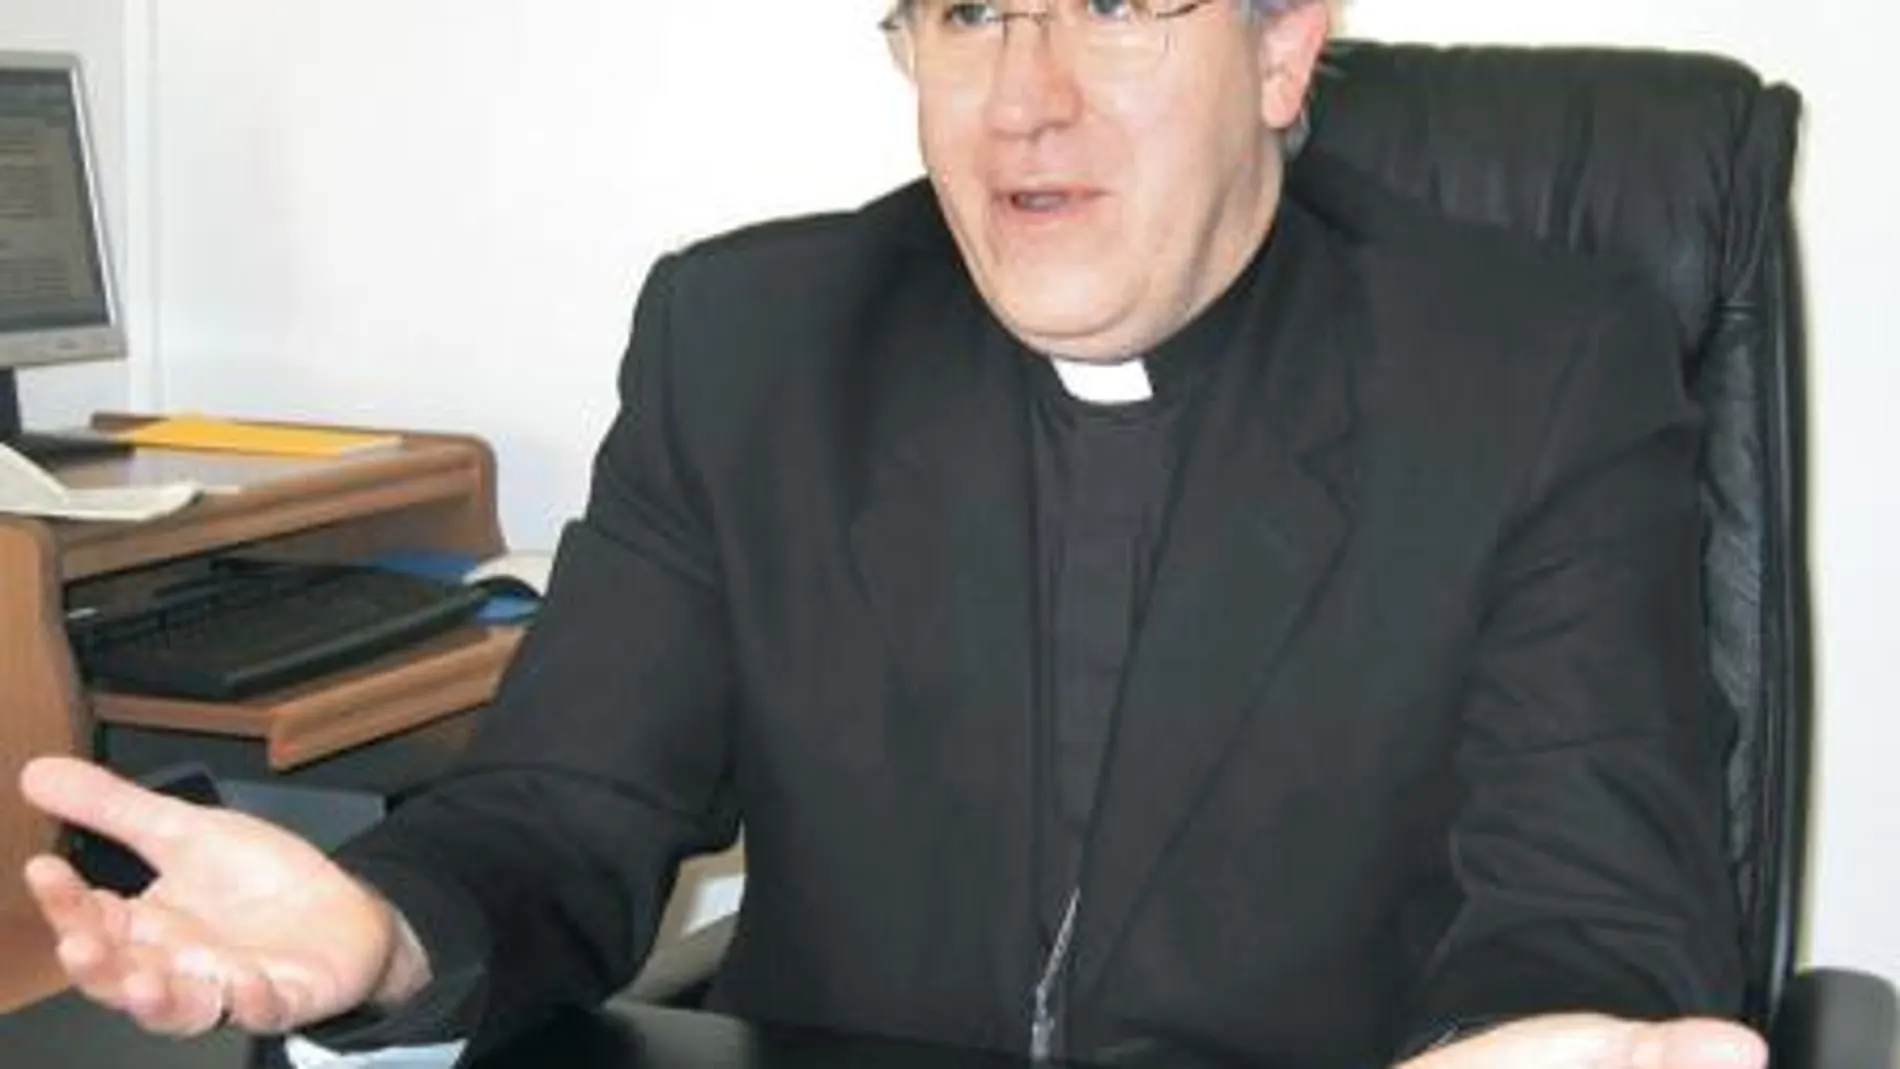 José Ángel Saiz es obispo de Tarrasa desde la creación de la diócesis en junio de 2004